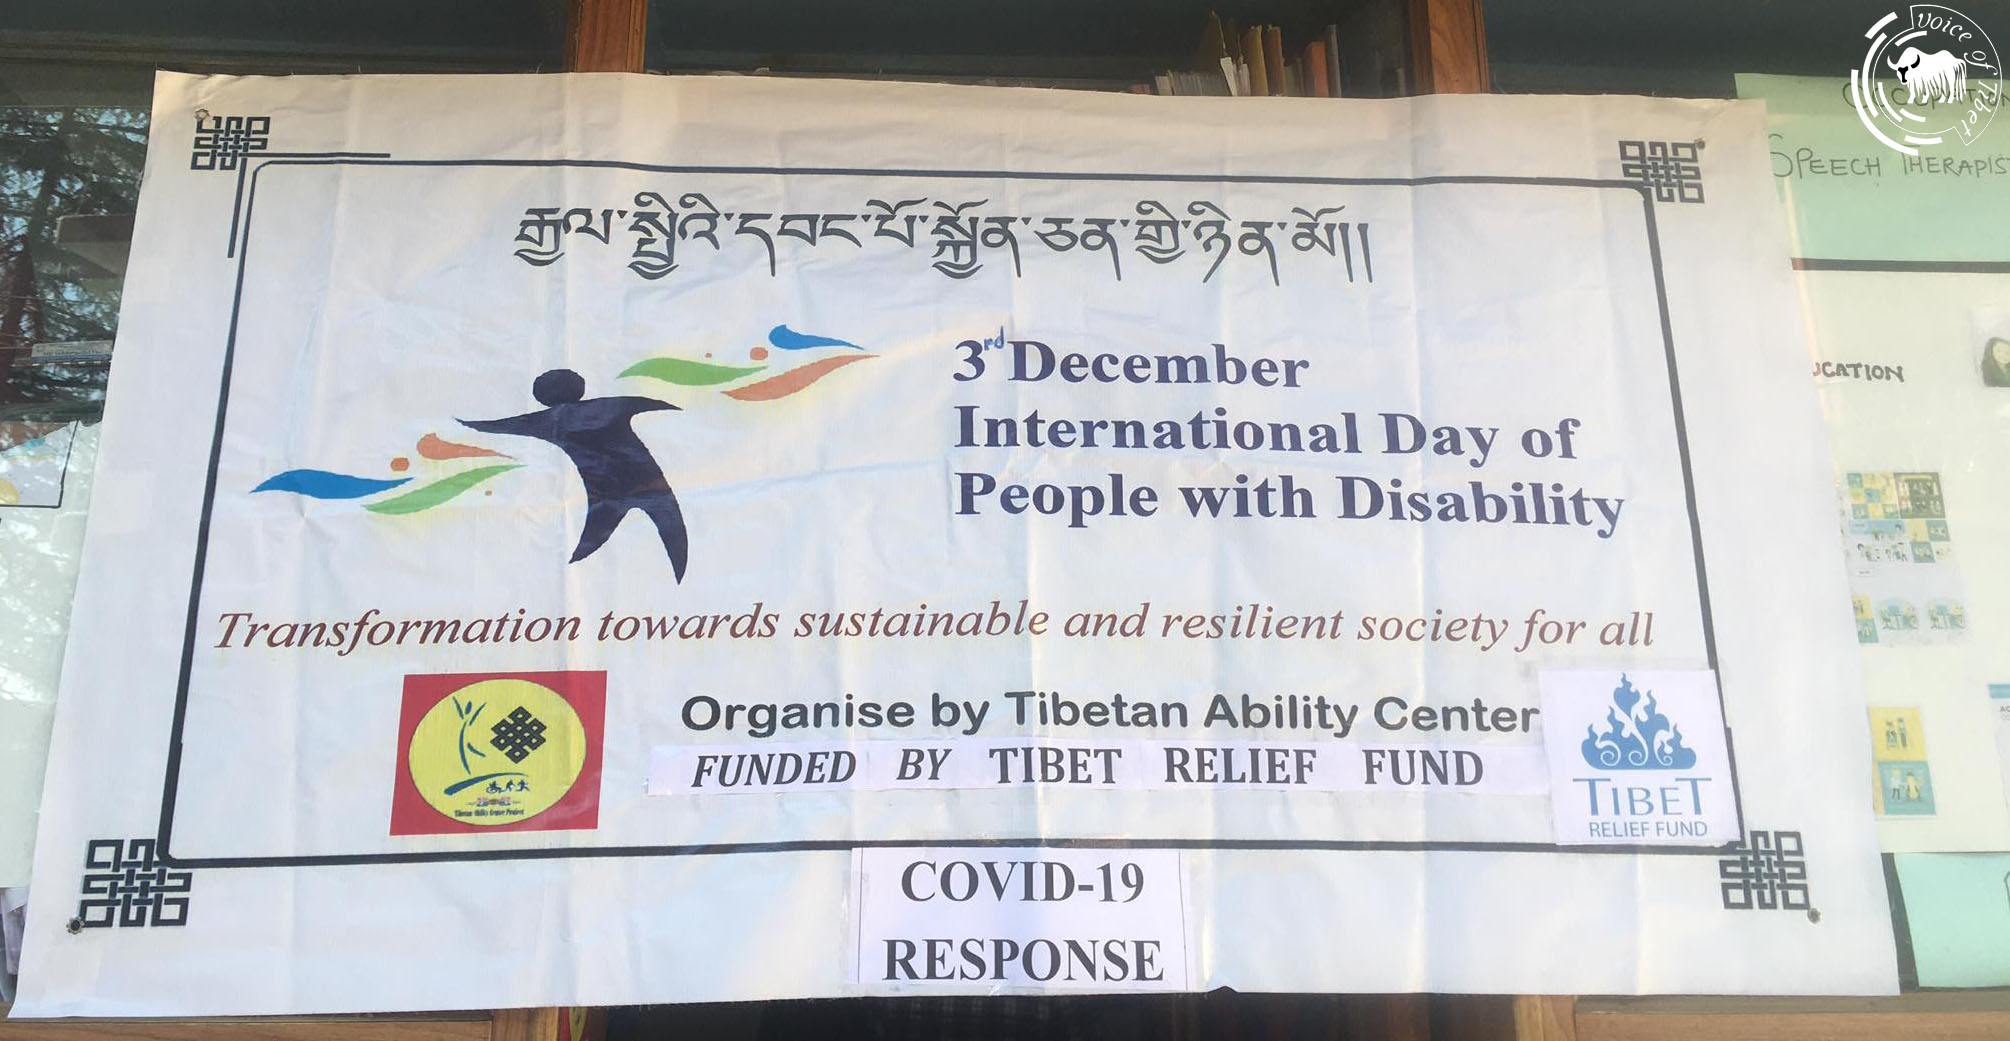 流亡藏人组织在达兰萨拉举办活动纪念国际残疾人日